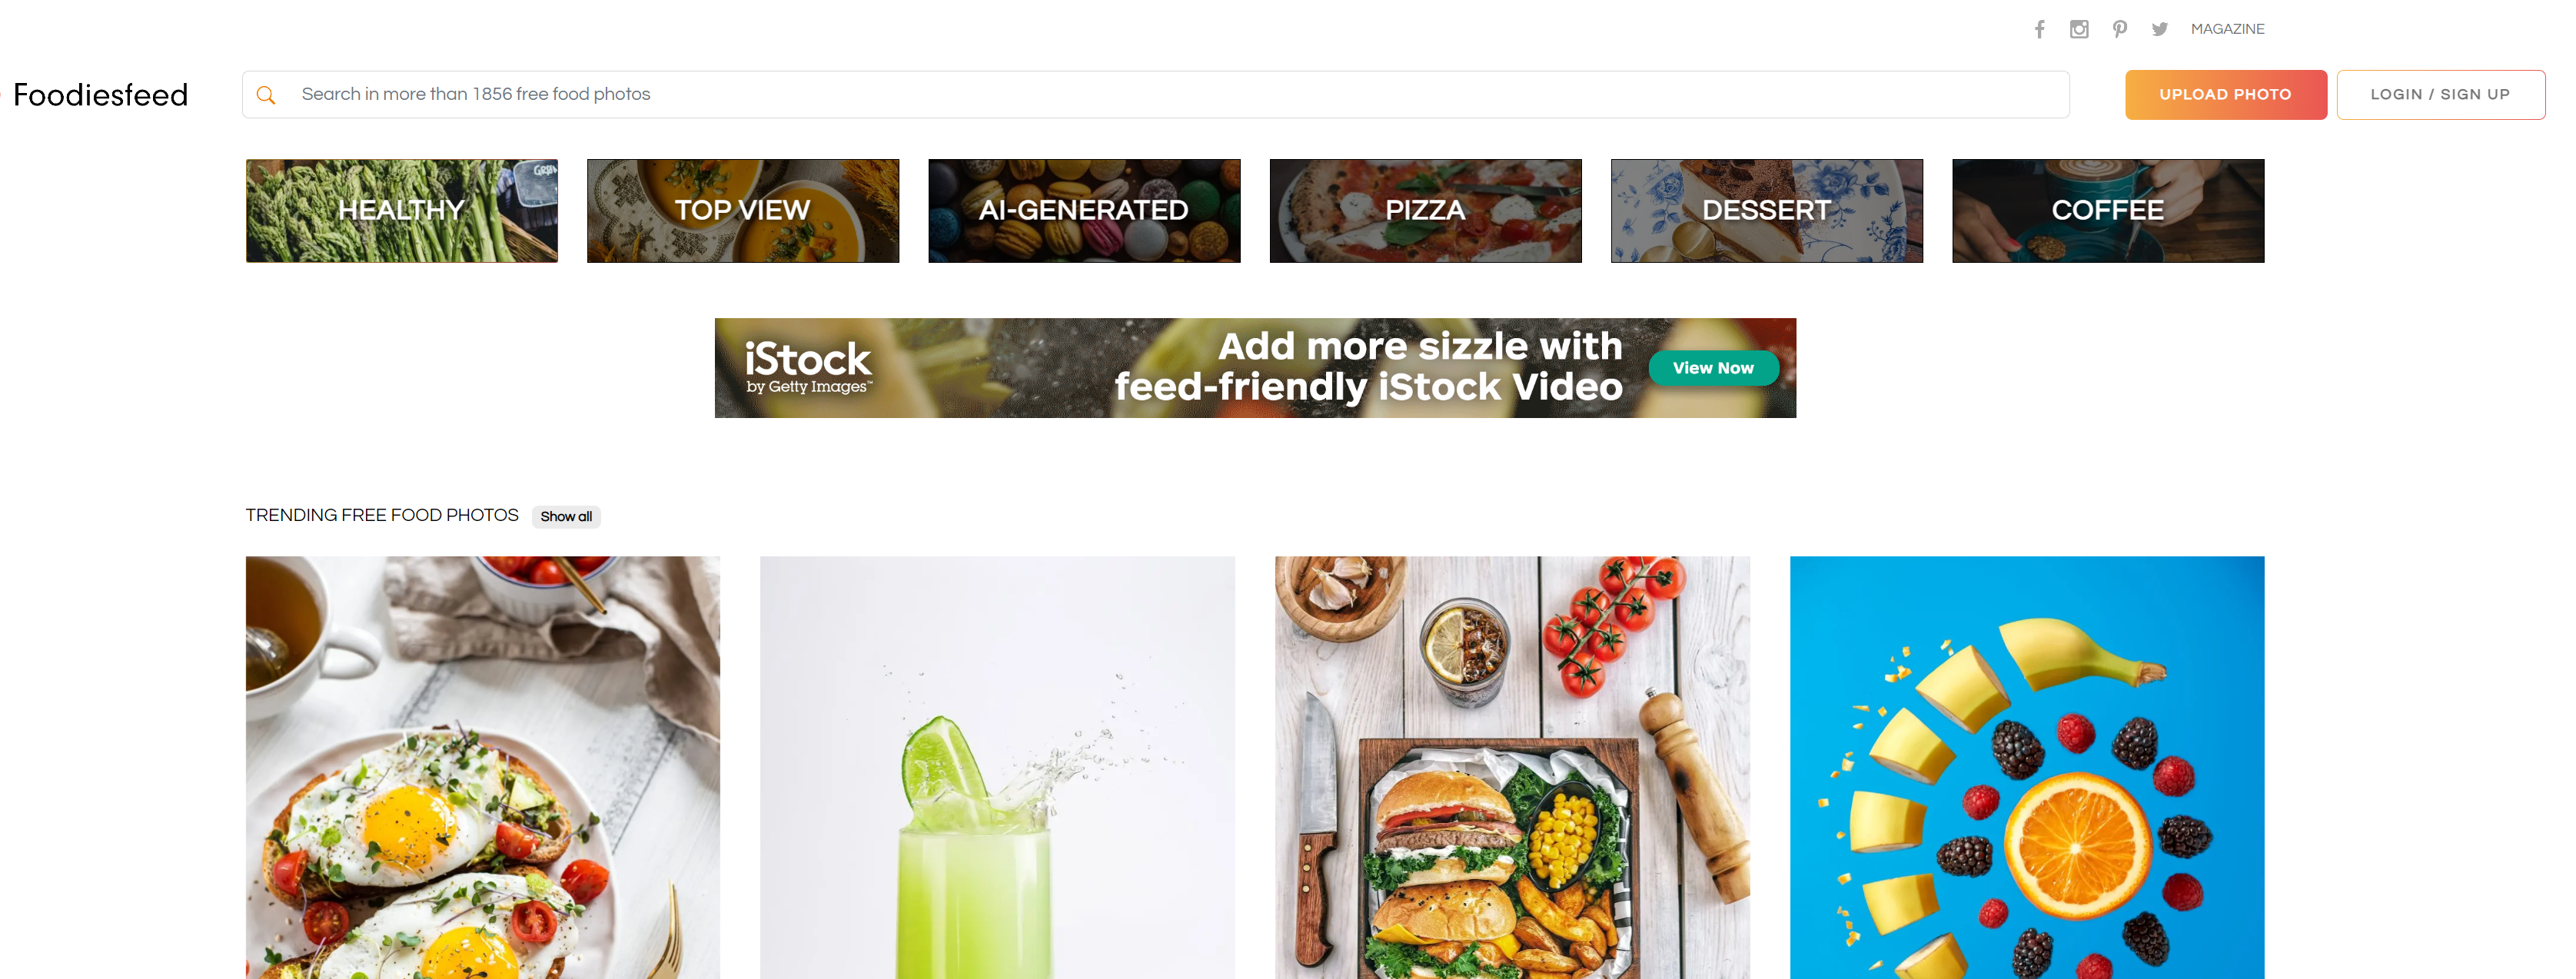 Foodiesfeed  一个提供高质量免费美食照片资源的网站